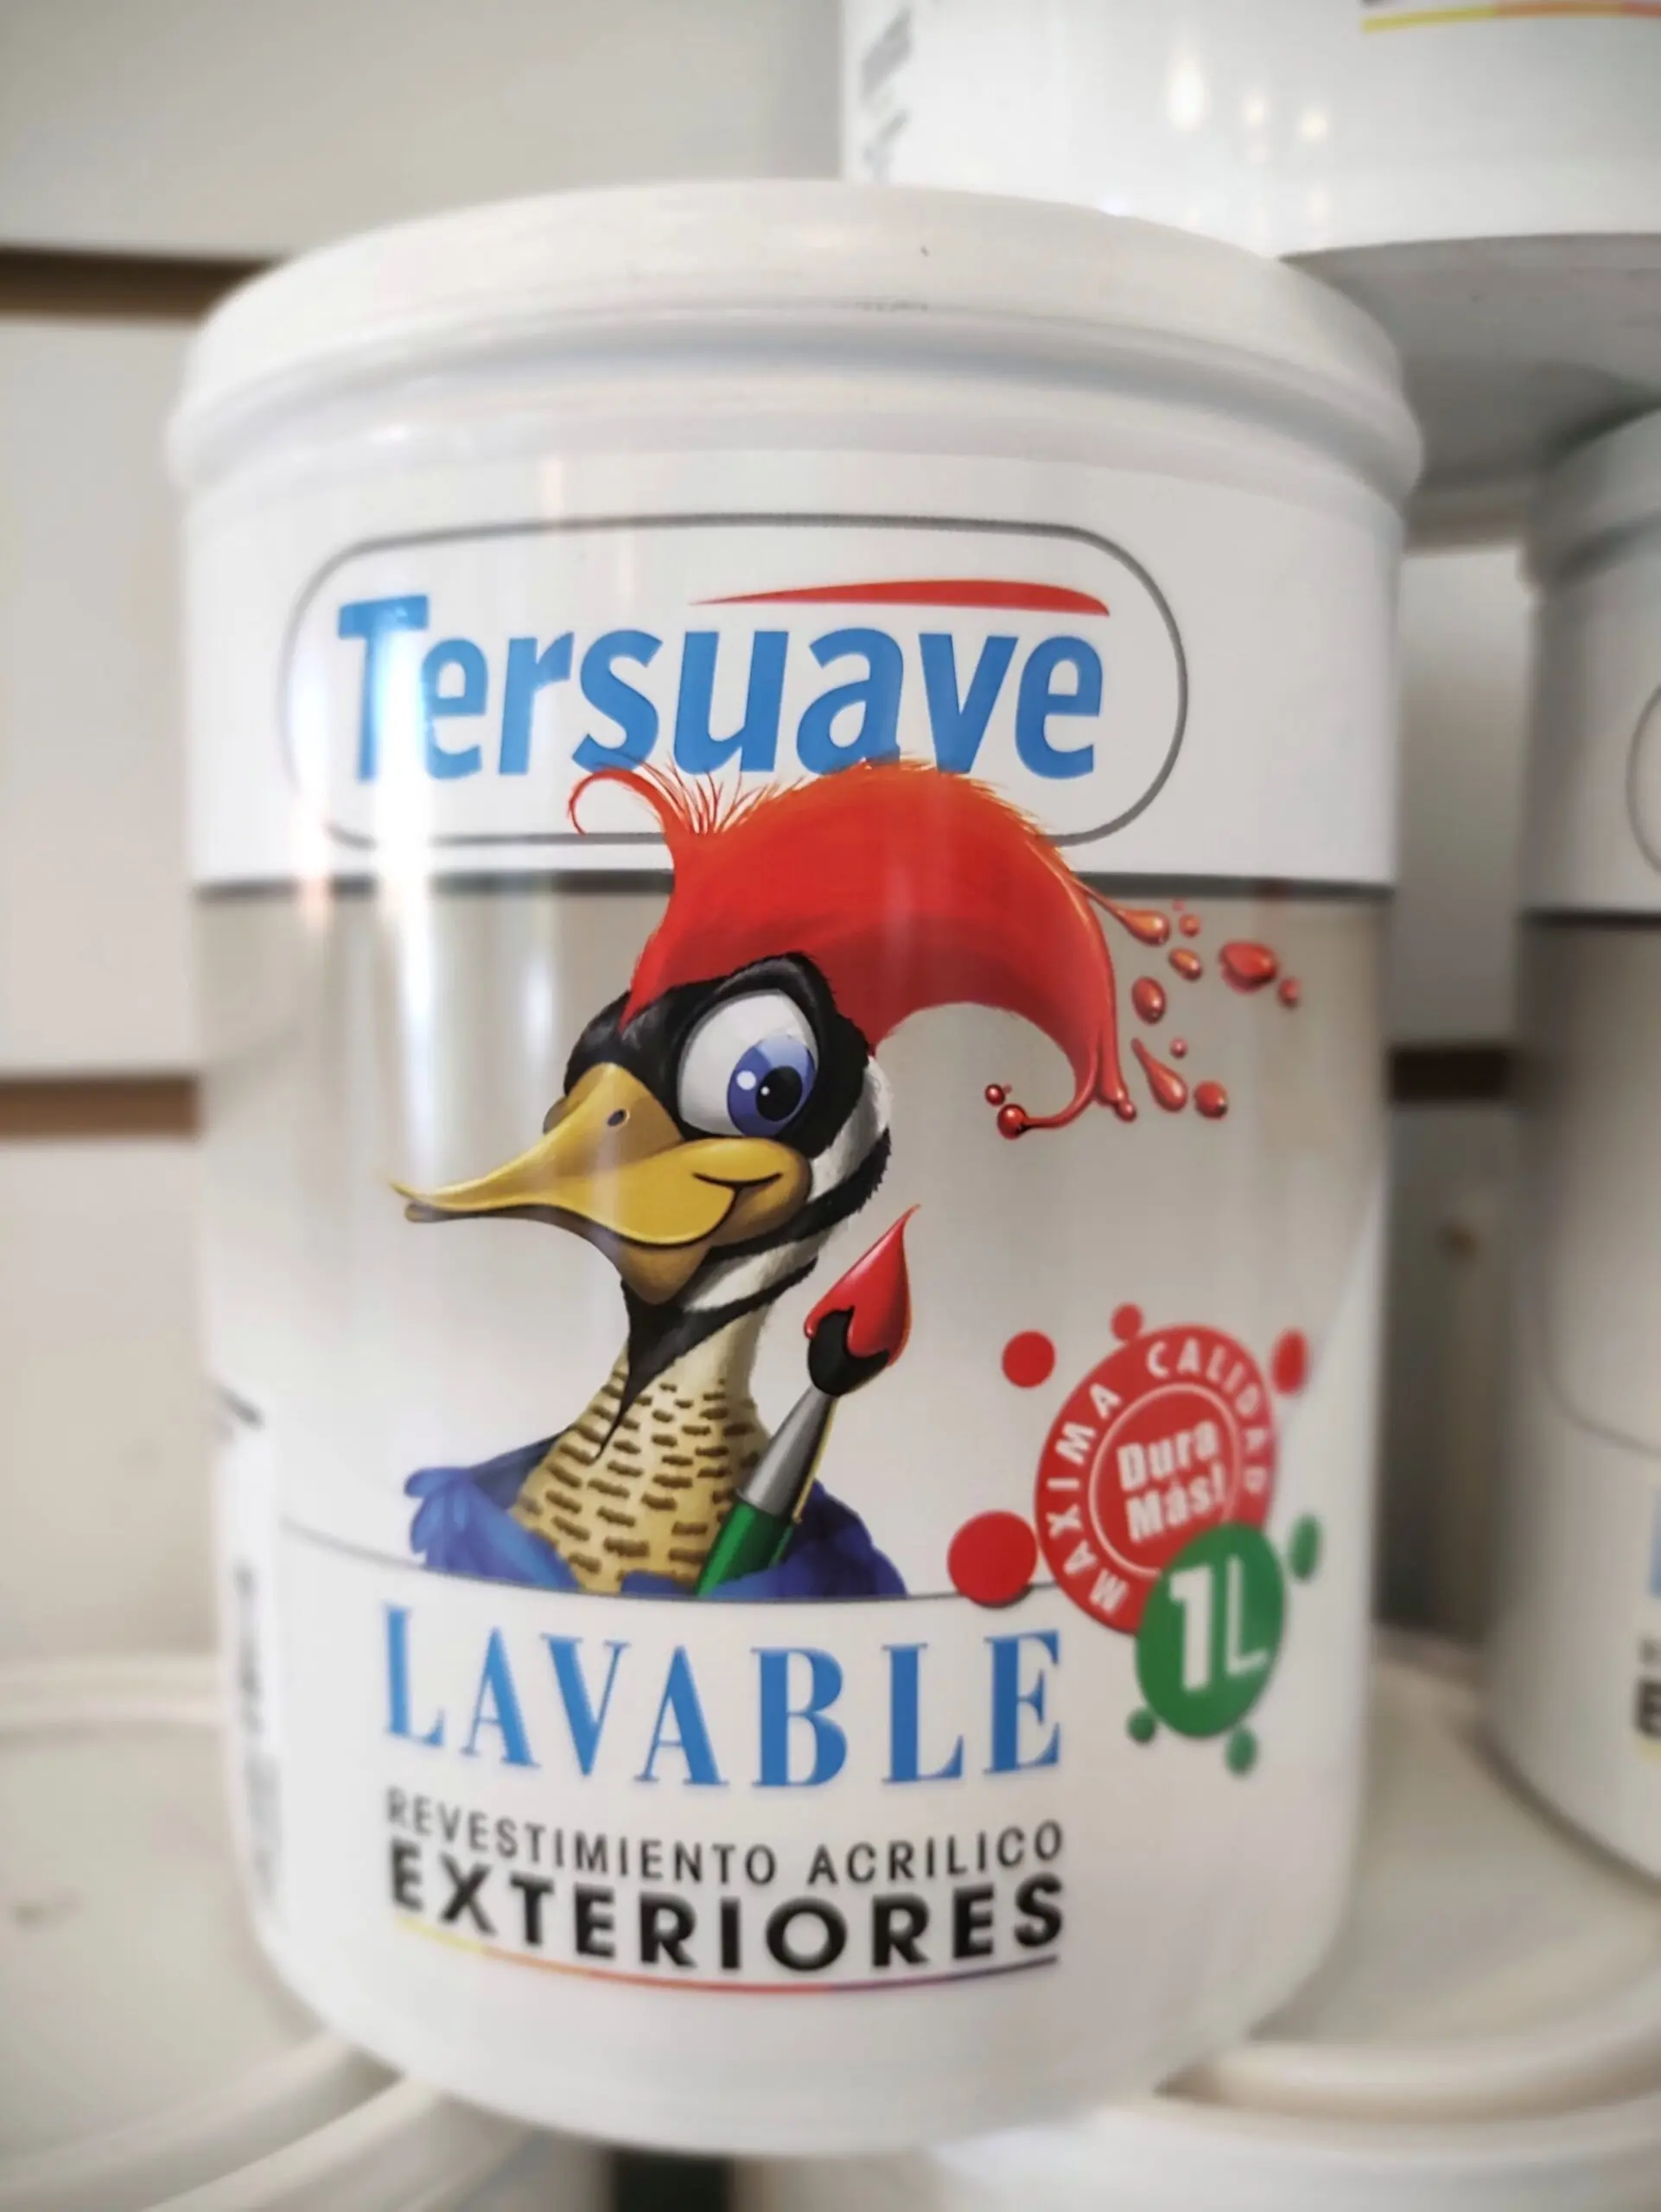 revestimiento acrilico tersuaveen sodimac - Cuánto rinde un litro de pintura Tersuave